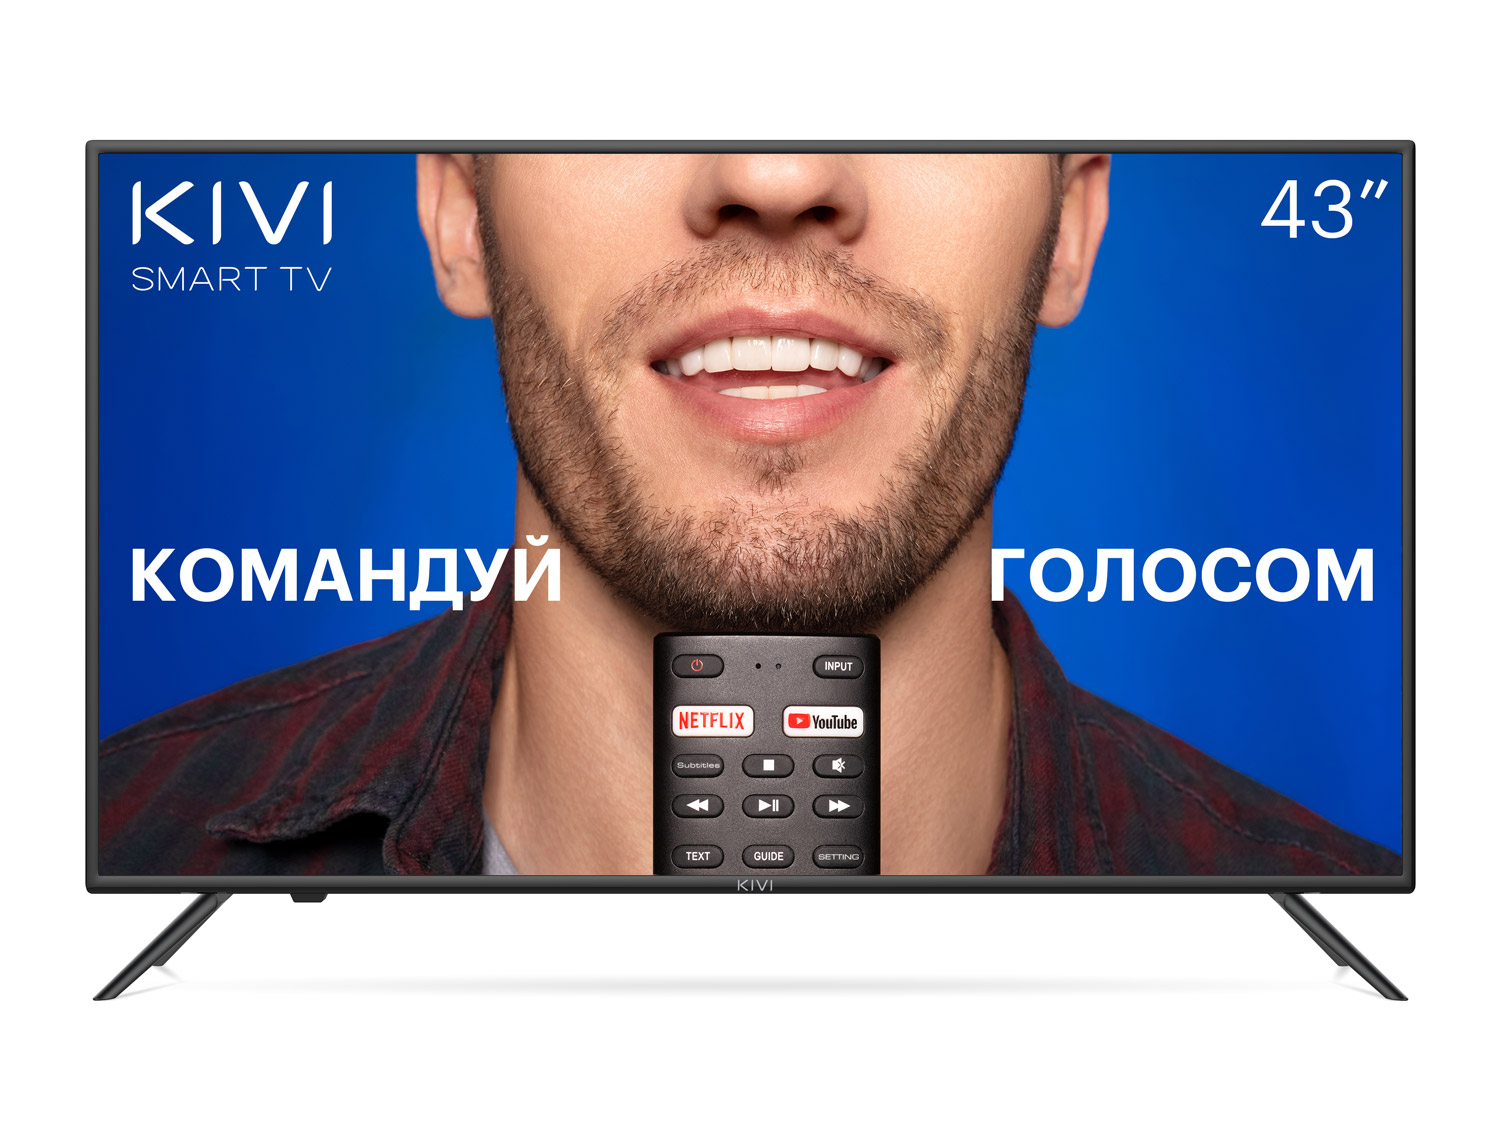 Новая линейка смарт-телевизоров KIVI: идеальная картинка и простота в использовании